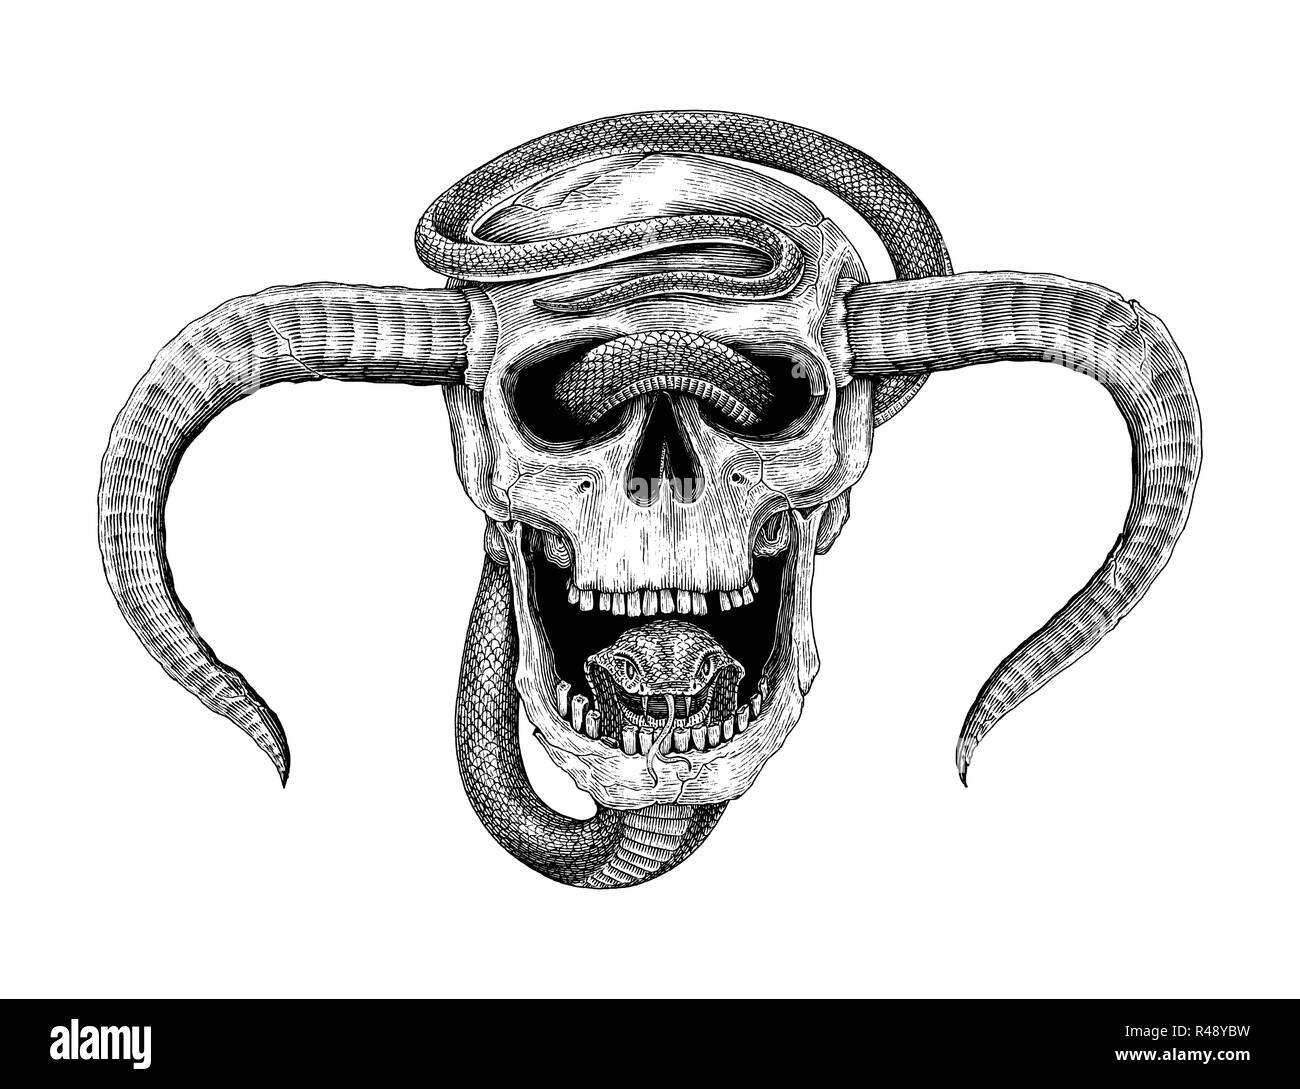 Serpente con teschio umano del disegno a mano vintage illustrazione  incisione per tatuaggio Immagine e Vettoriale - Alamy